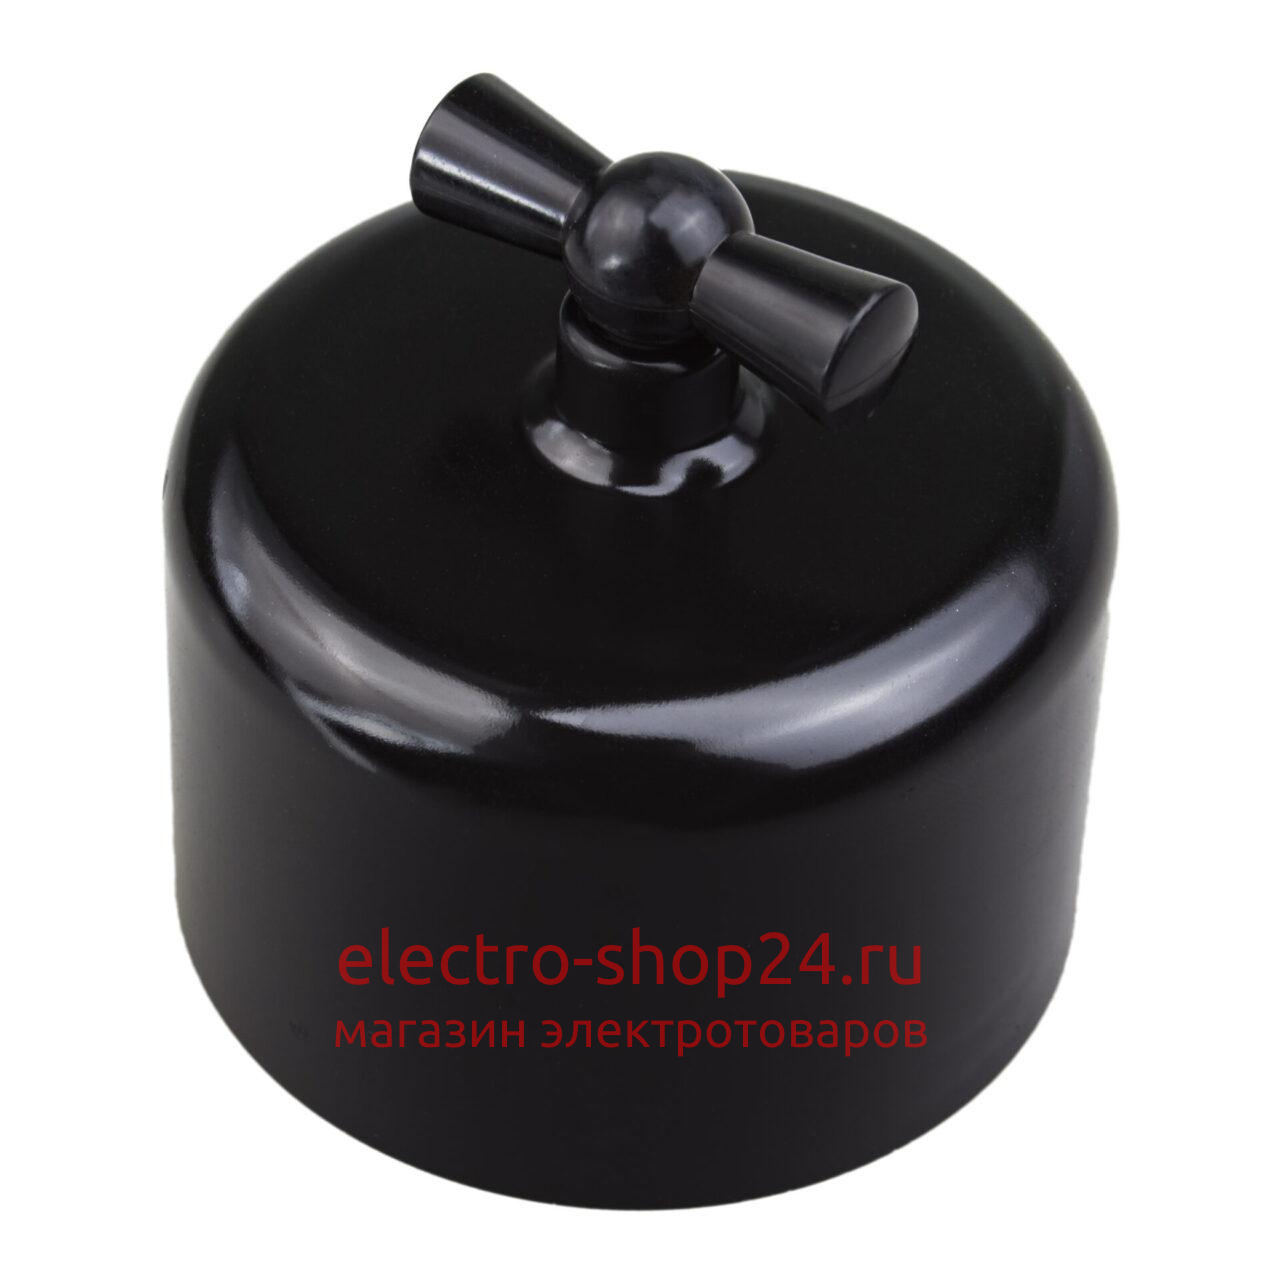 Выключатель 1-клавишный Bironi Ришелье, пластик черный R1-210-23 R1-210-23 - магазин электротехники Electroshop